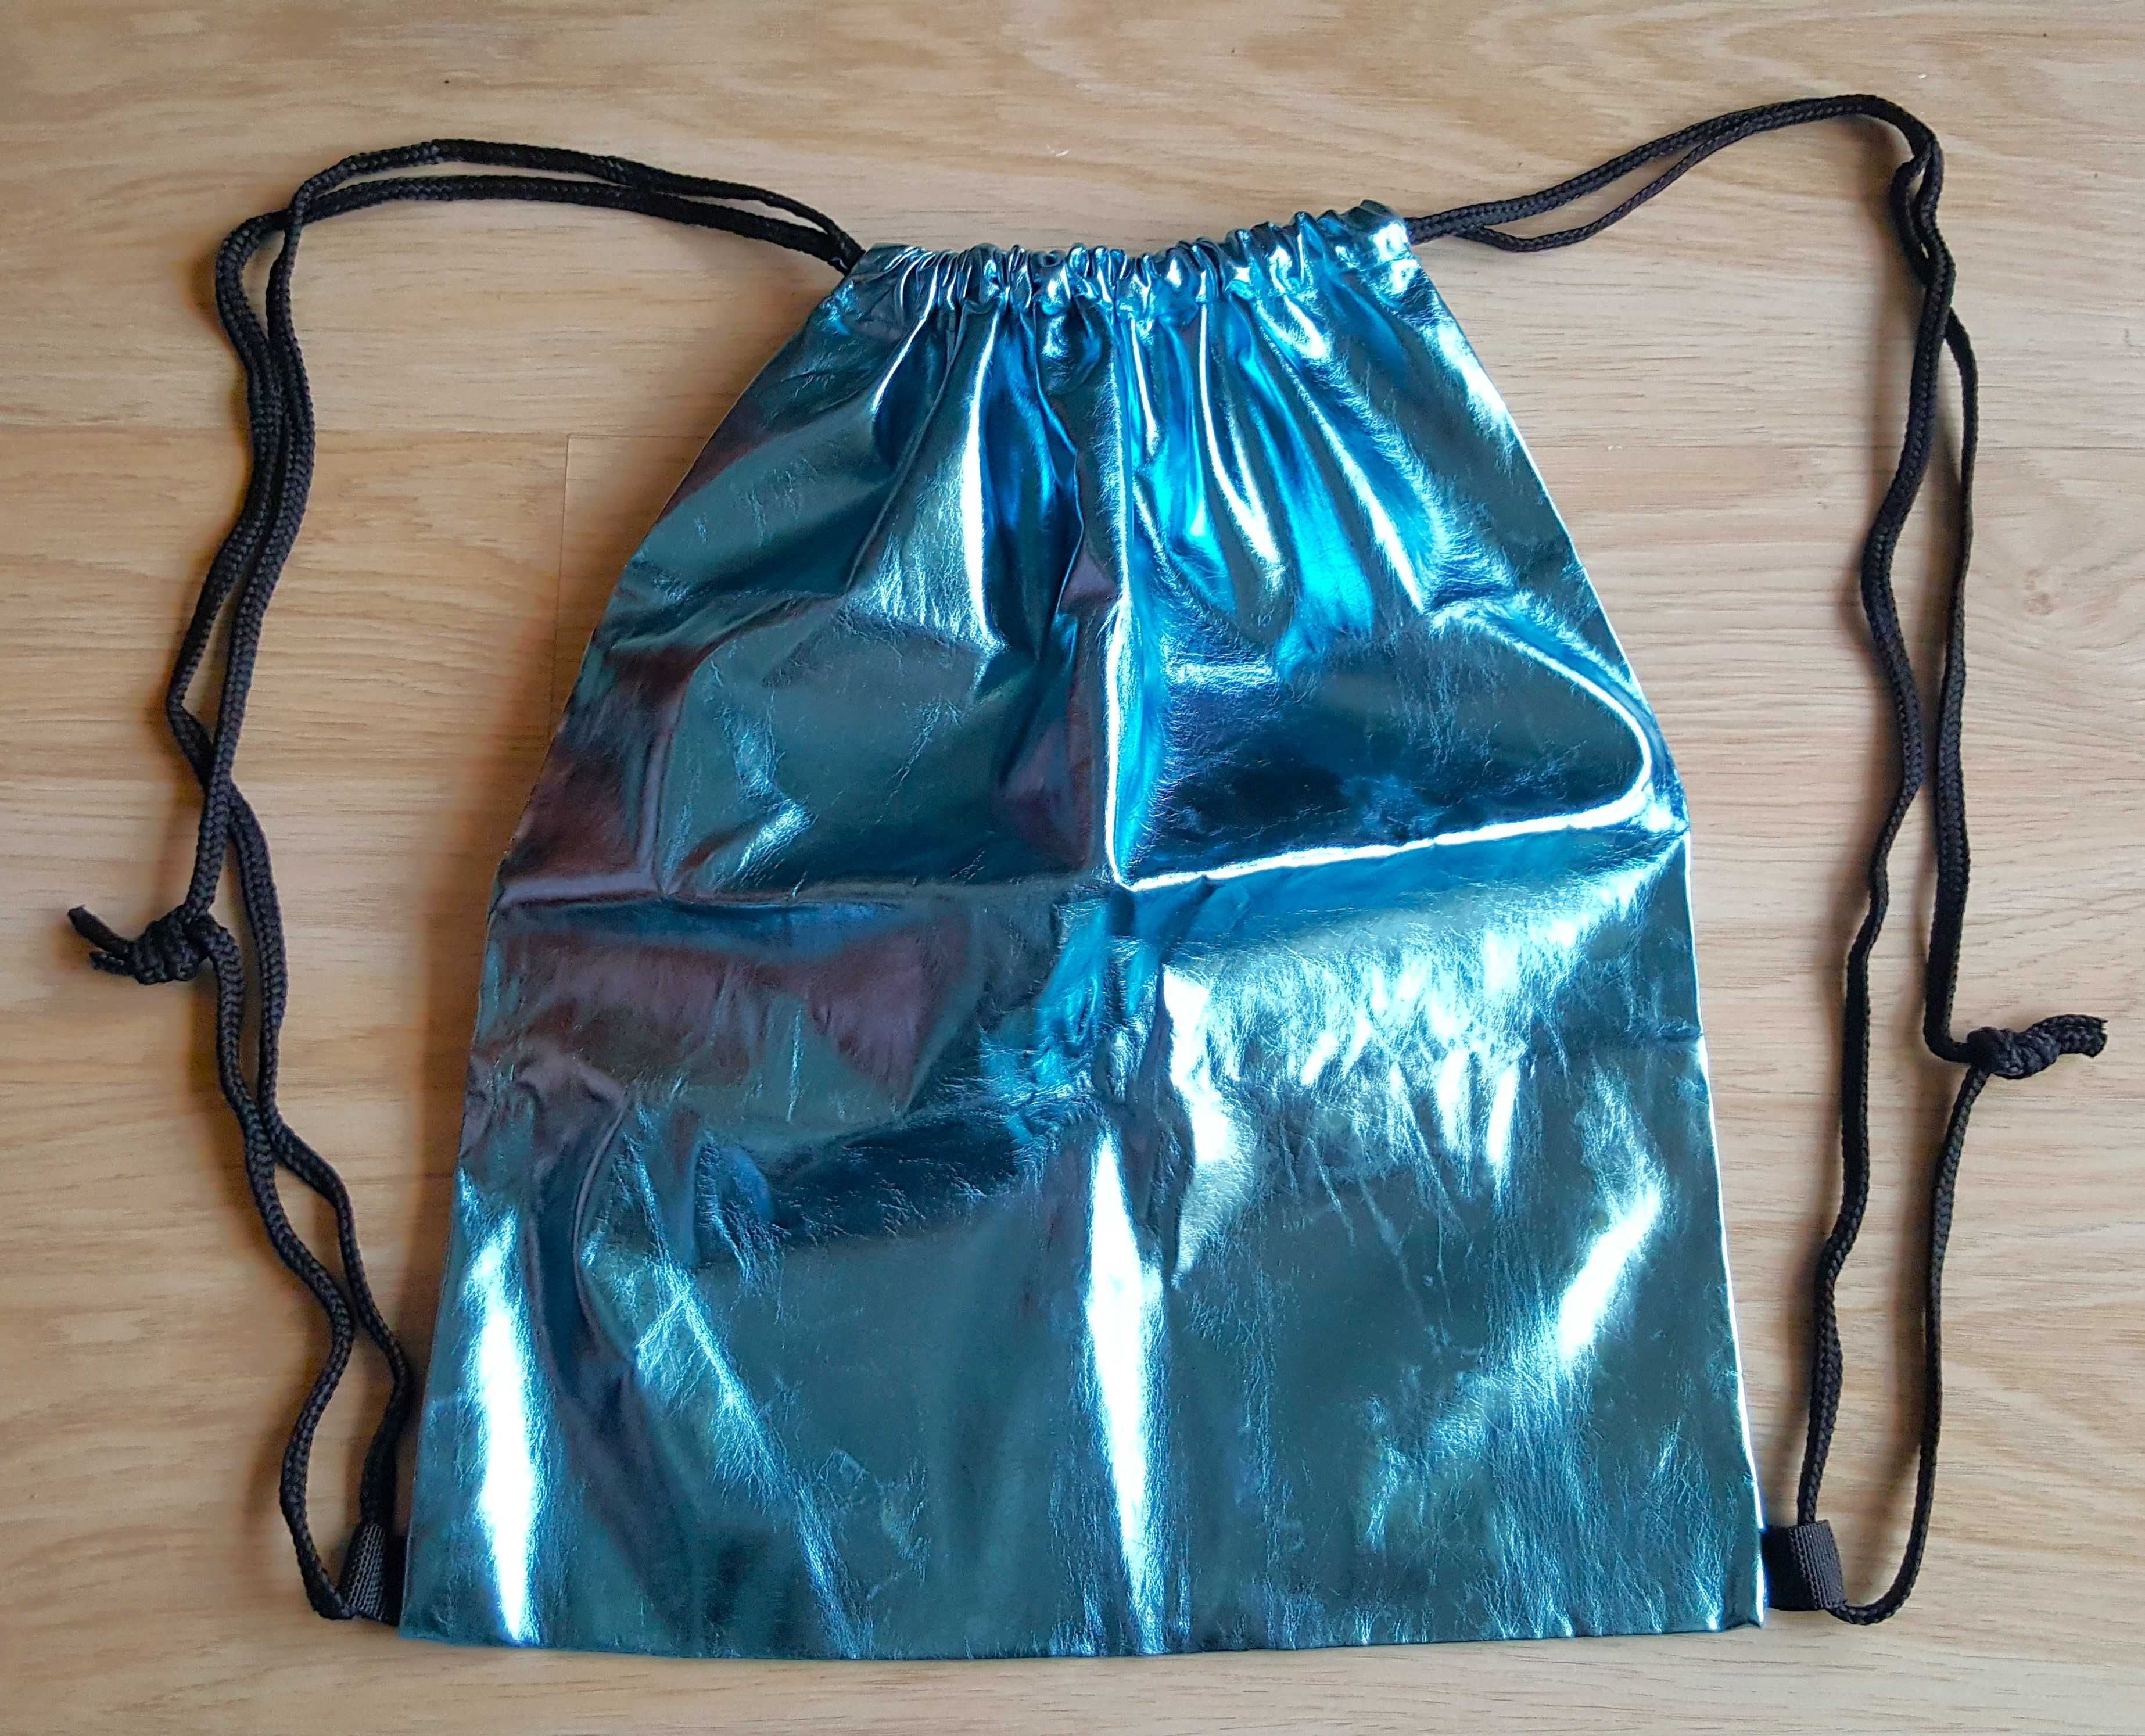 Plecak - worek, torba - niebieski metaliczny